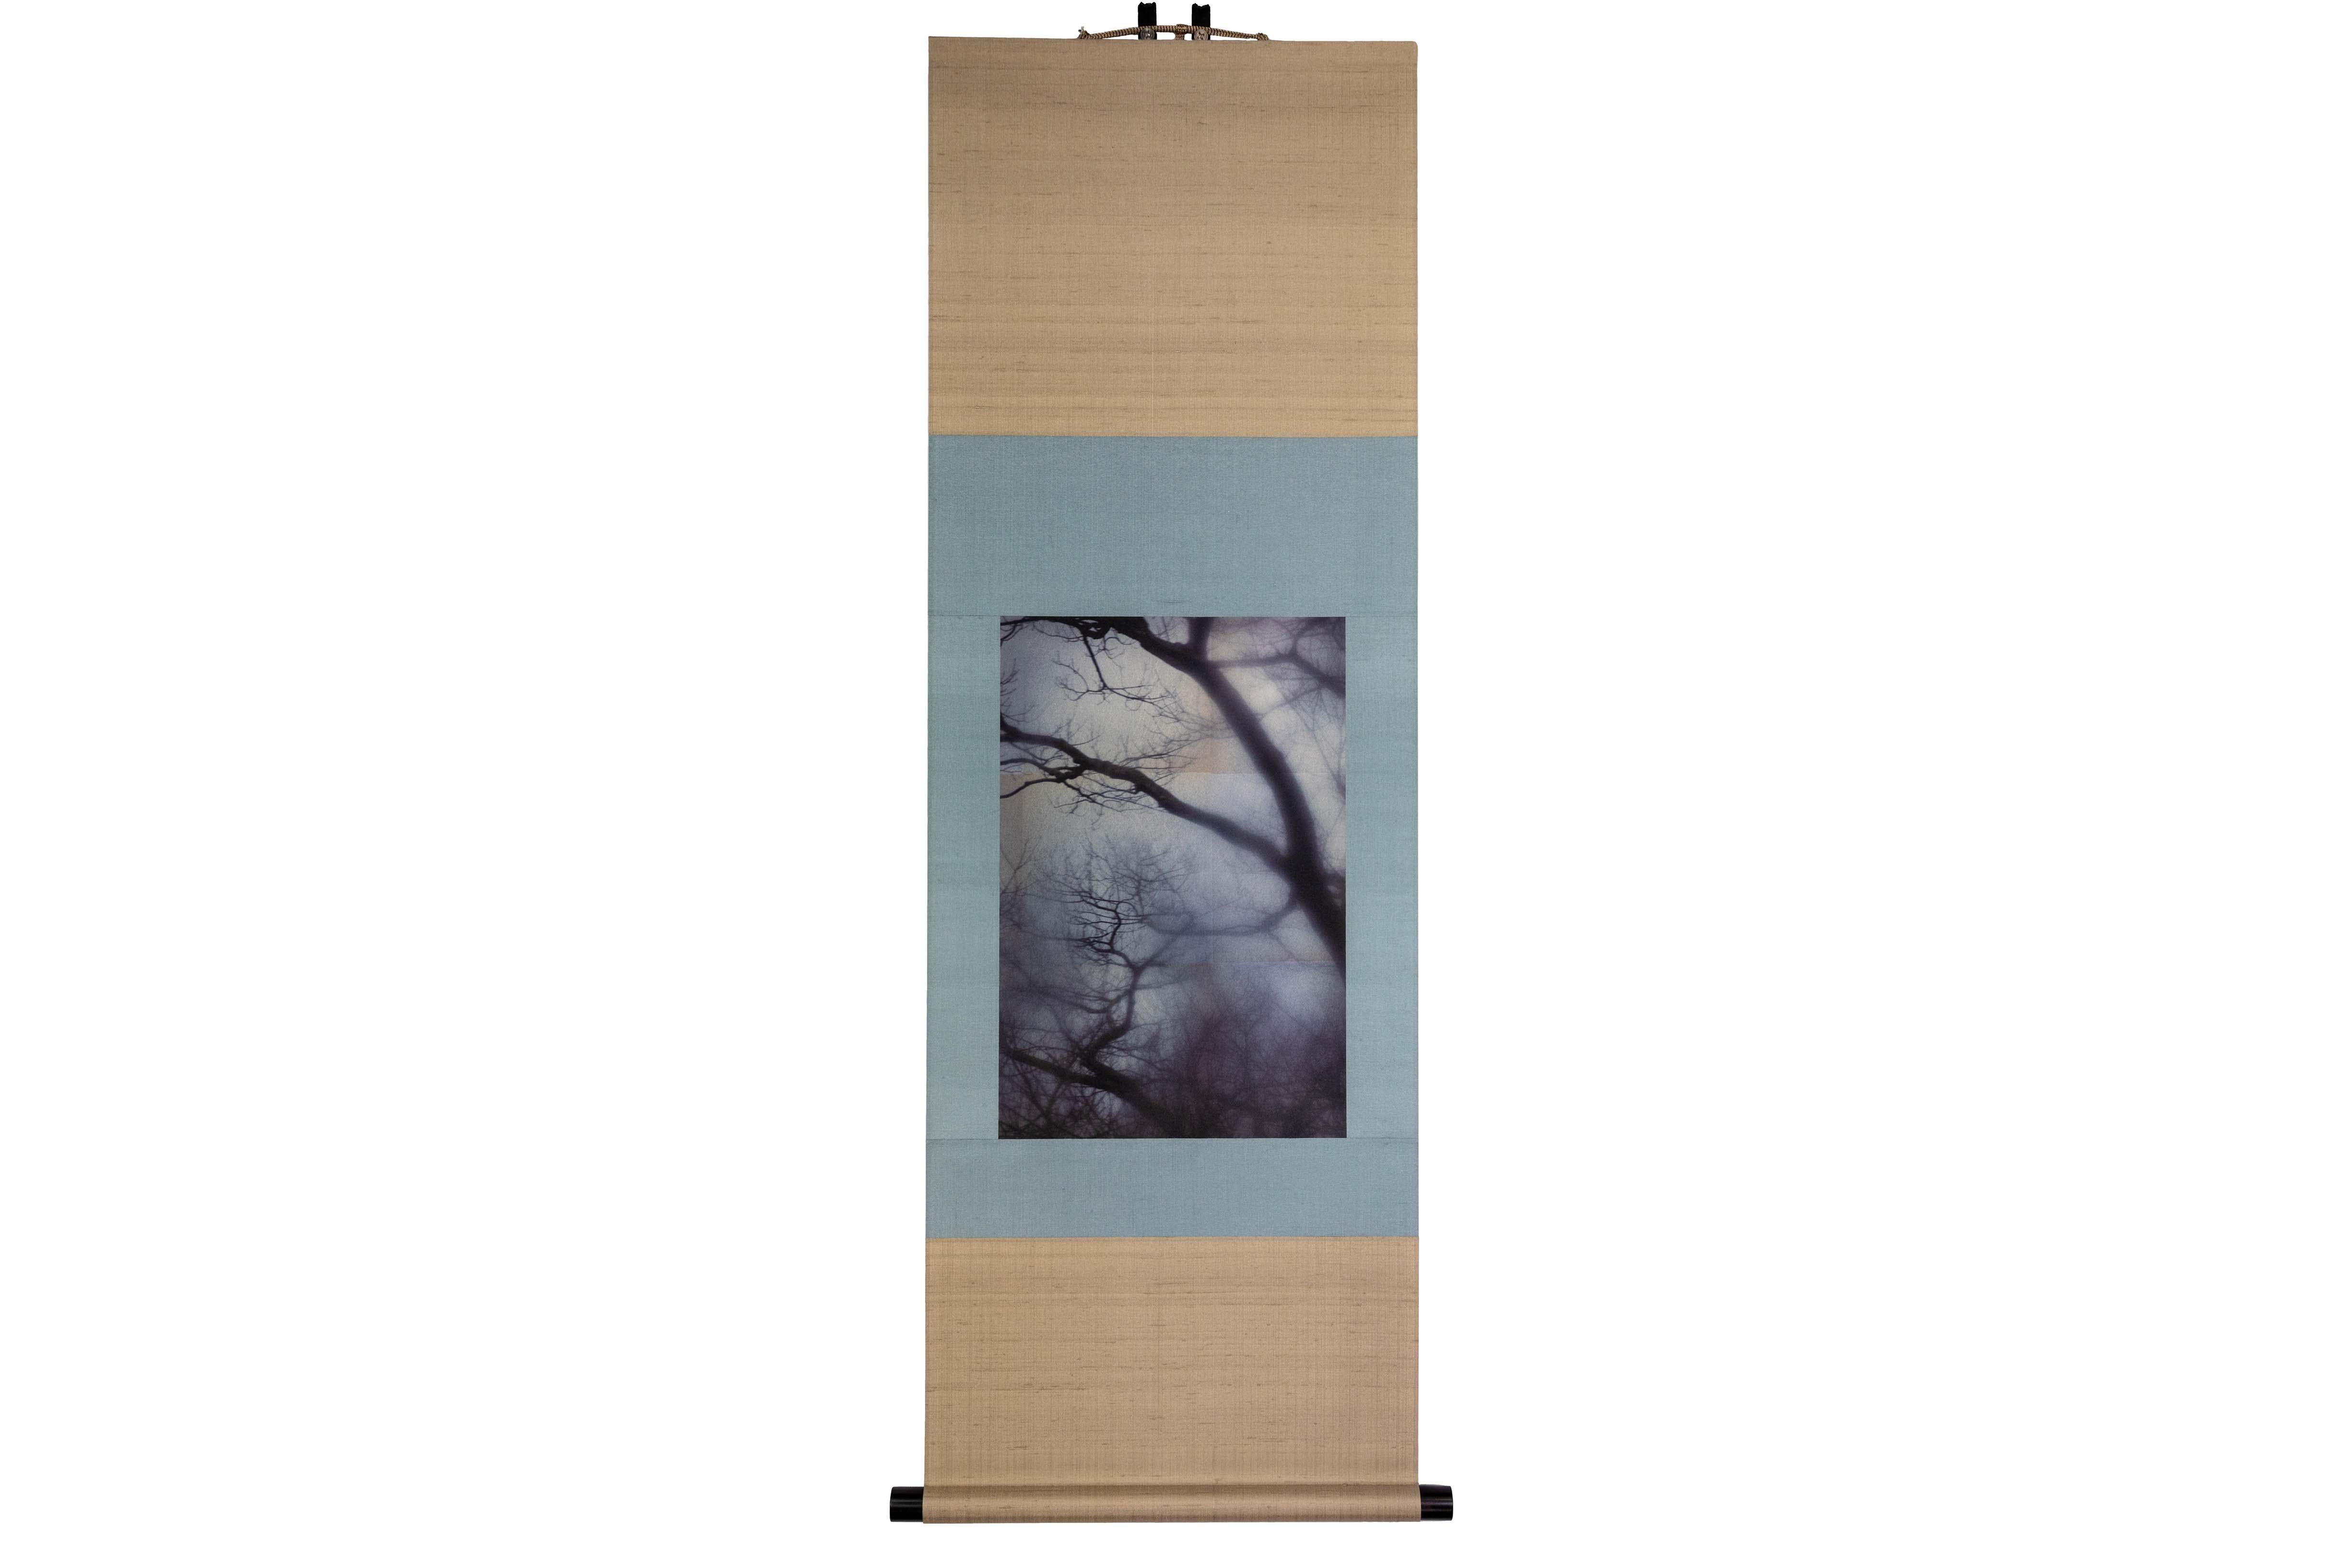 Tirage UV d'une photographie numérique sur feuille d'étain sur papier & monté sur rouleau de soie japonais

Kojun est un artiste autodidacte américain multimédia né en 1977 et basé à Tokyo, au Japon, depuis 1999. Le projet Kojun, lancé en 2010,